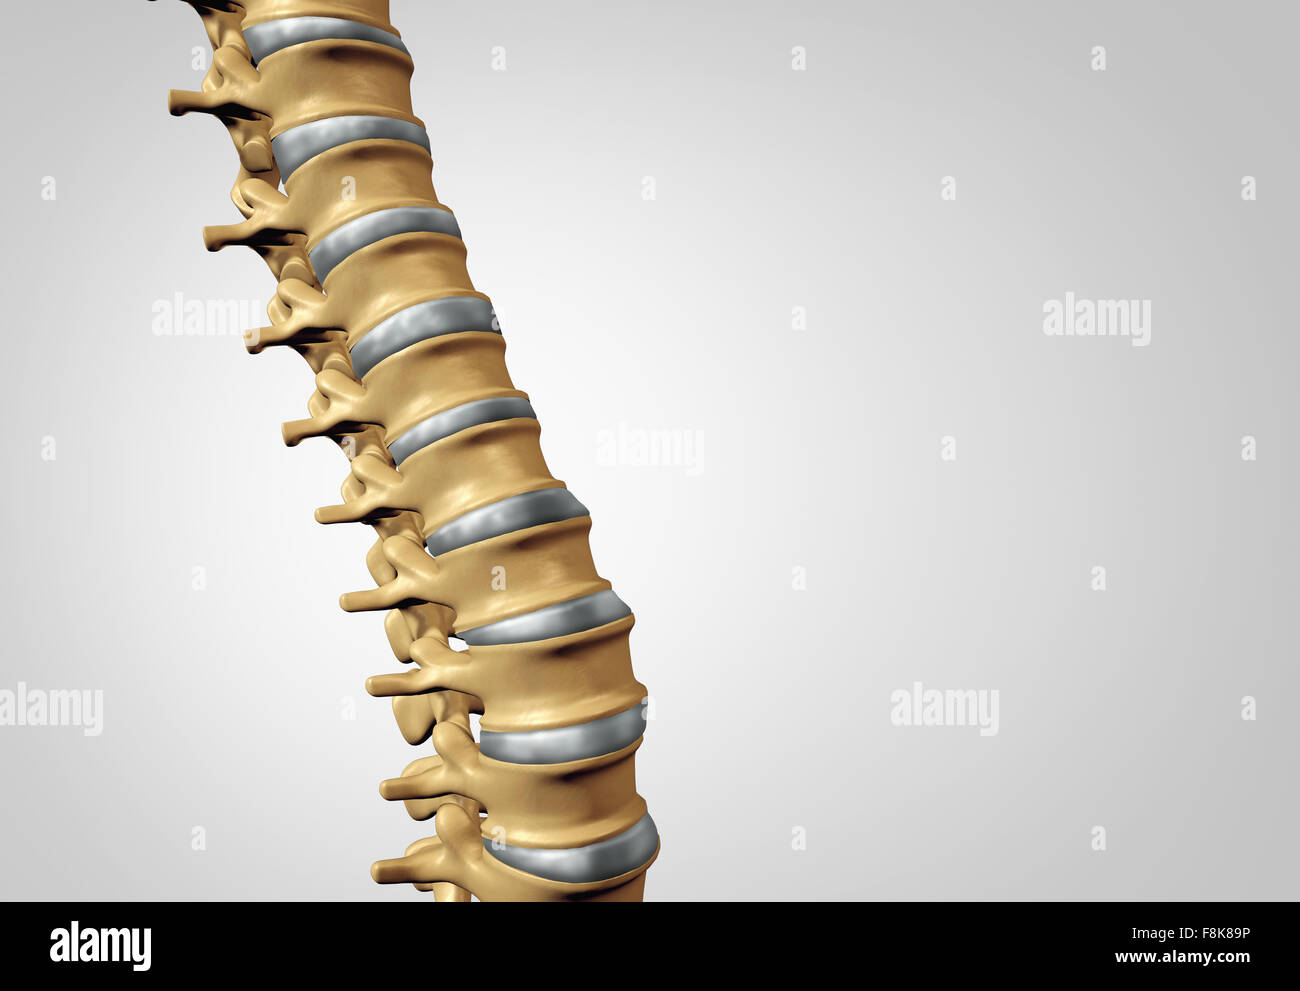 Spina diagnostica spinale umano il concetto di sistema come cure mediche simbolo anatomia con scheletro della struttura ossea e dischi intervertebrali closeup con copia spazio. Foto Stock